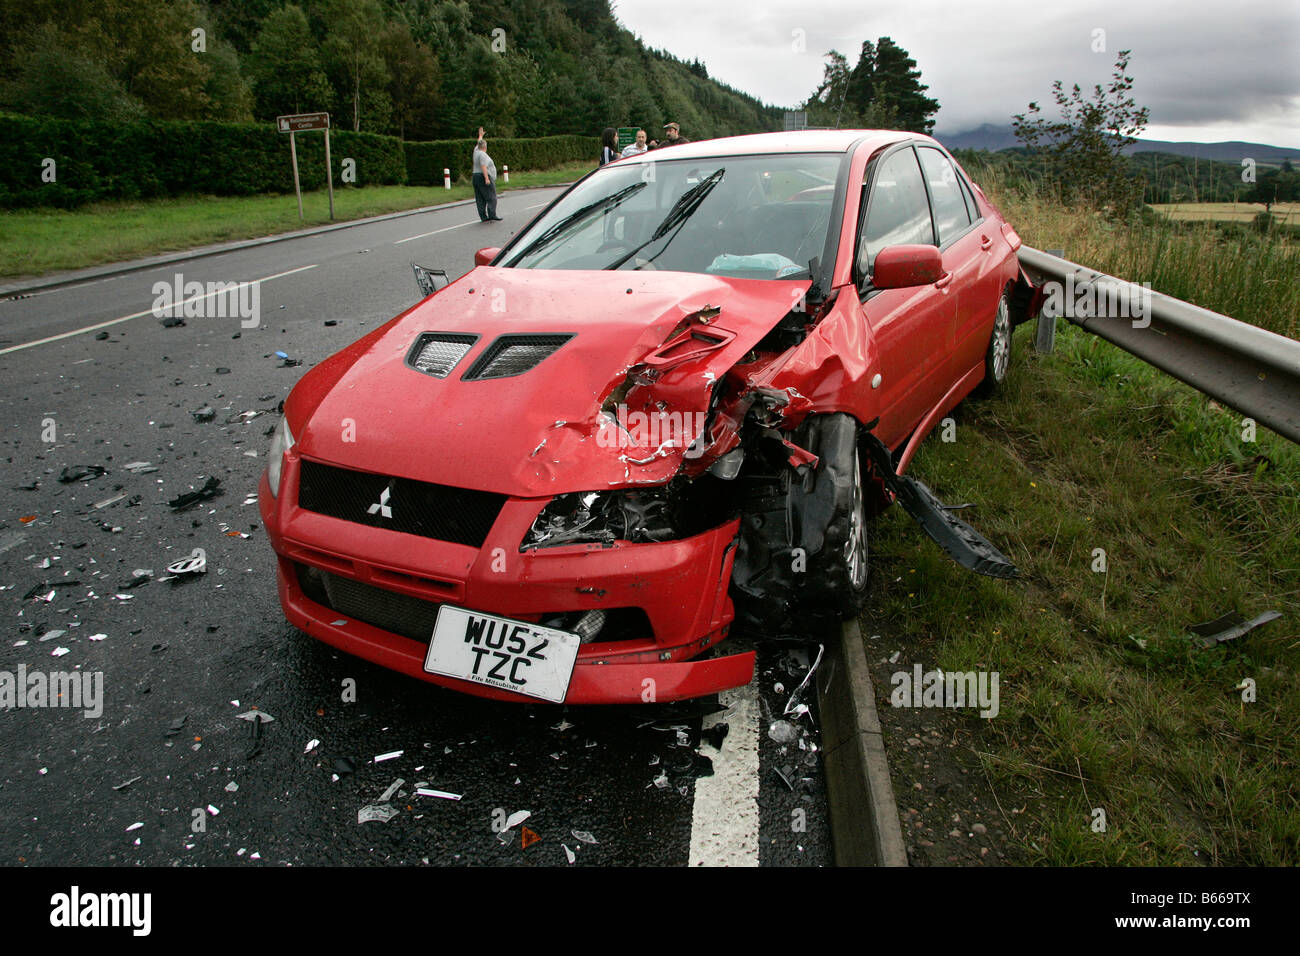 Les lieux d'un accident de la route impliquant une collision frontale entre deux voitures sur une route rurale en Ecosse, Royaume-Uni Banque D'Images